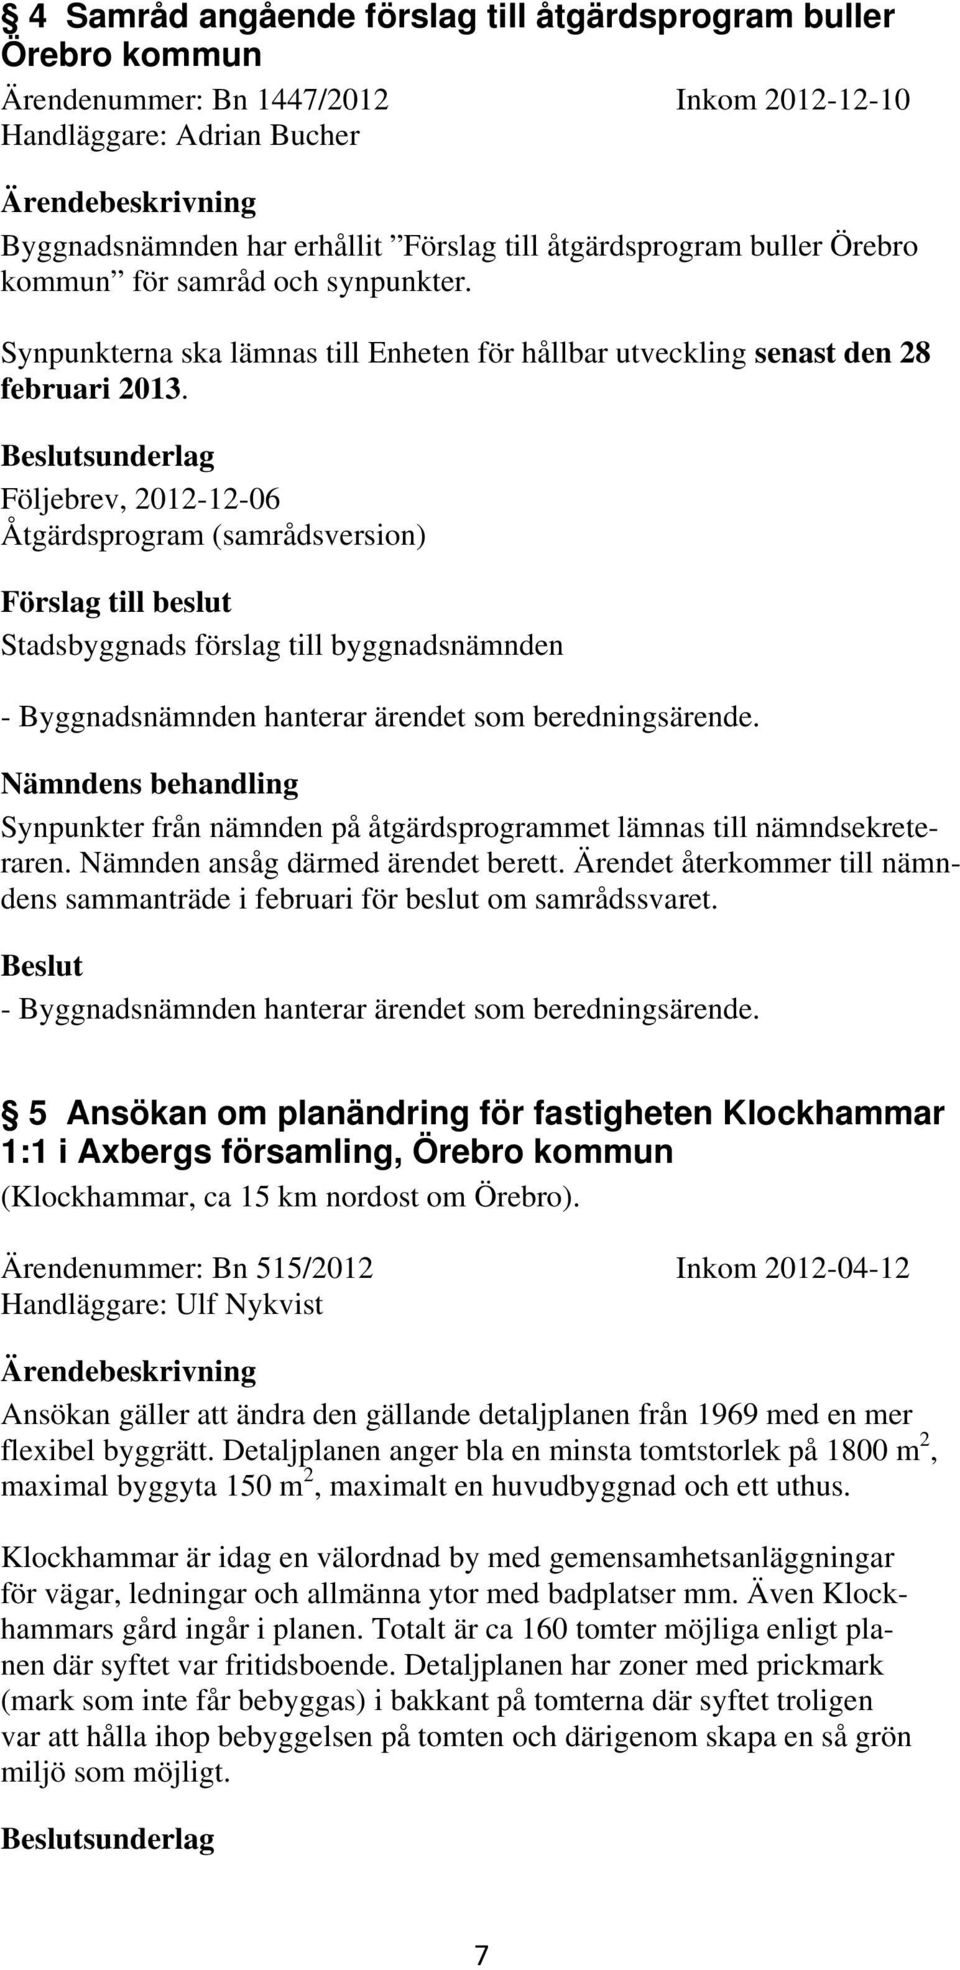 sunderlag Följebrev, 2012-12-06 Åtgärdsprogram (samrådsversion) - Byggnadsnämnden hanterar ärendet som beredningsärende.